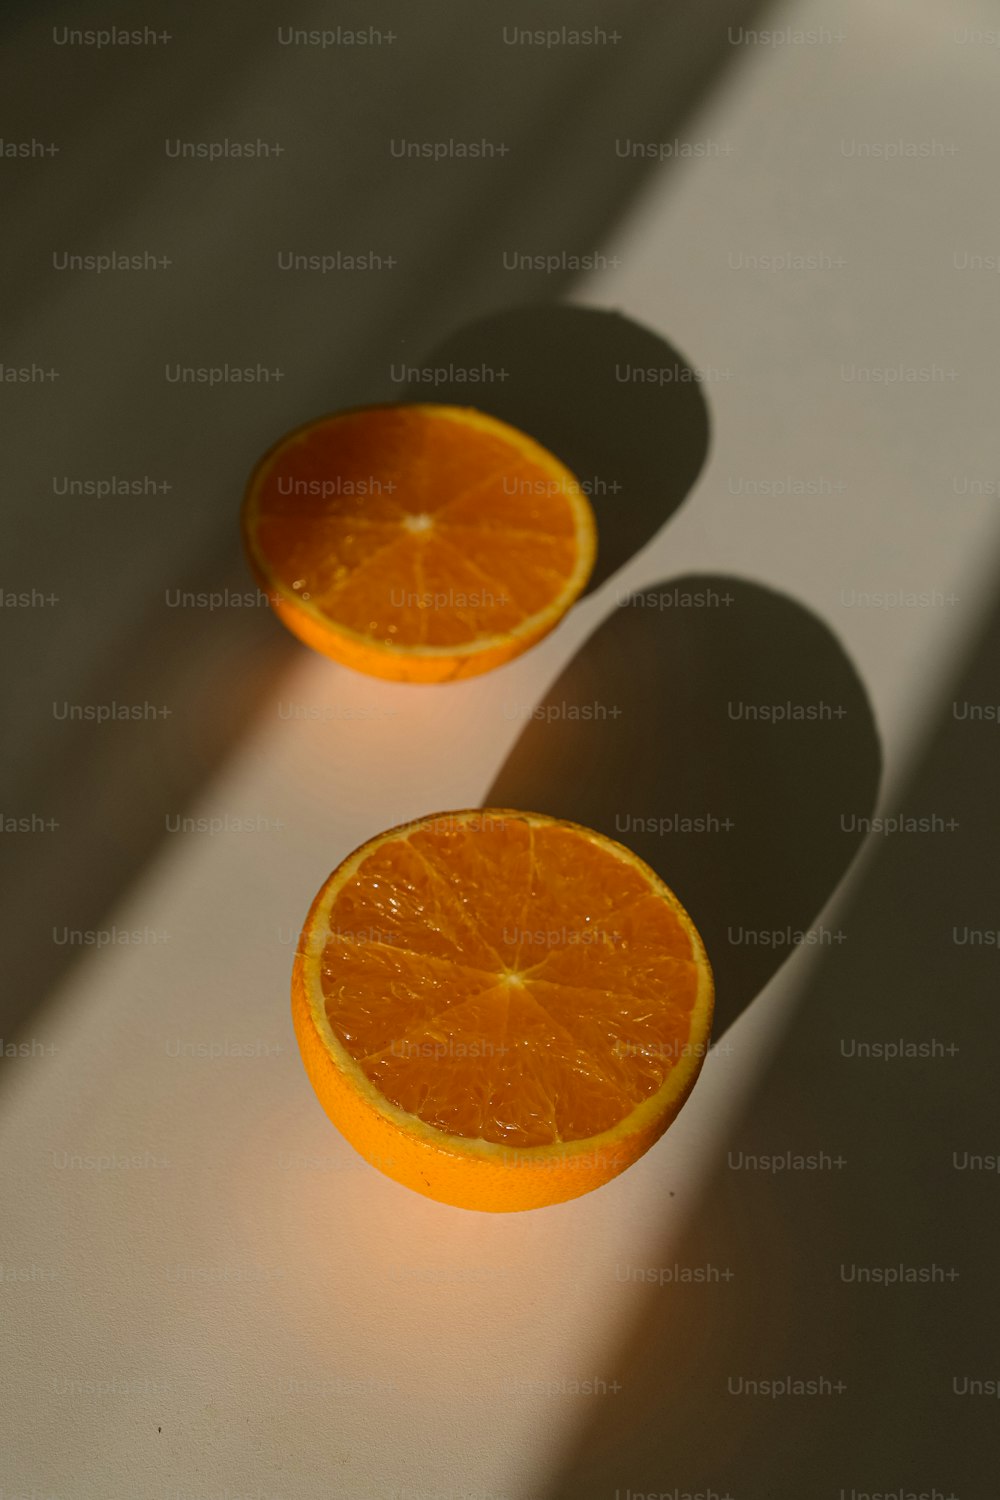 테이블에 앉아있는 오렌지의 두 반쪽